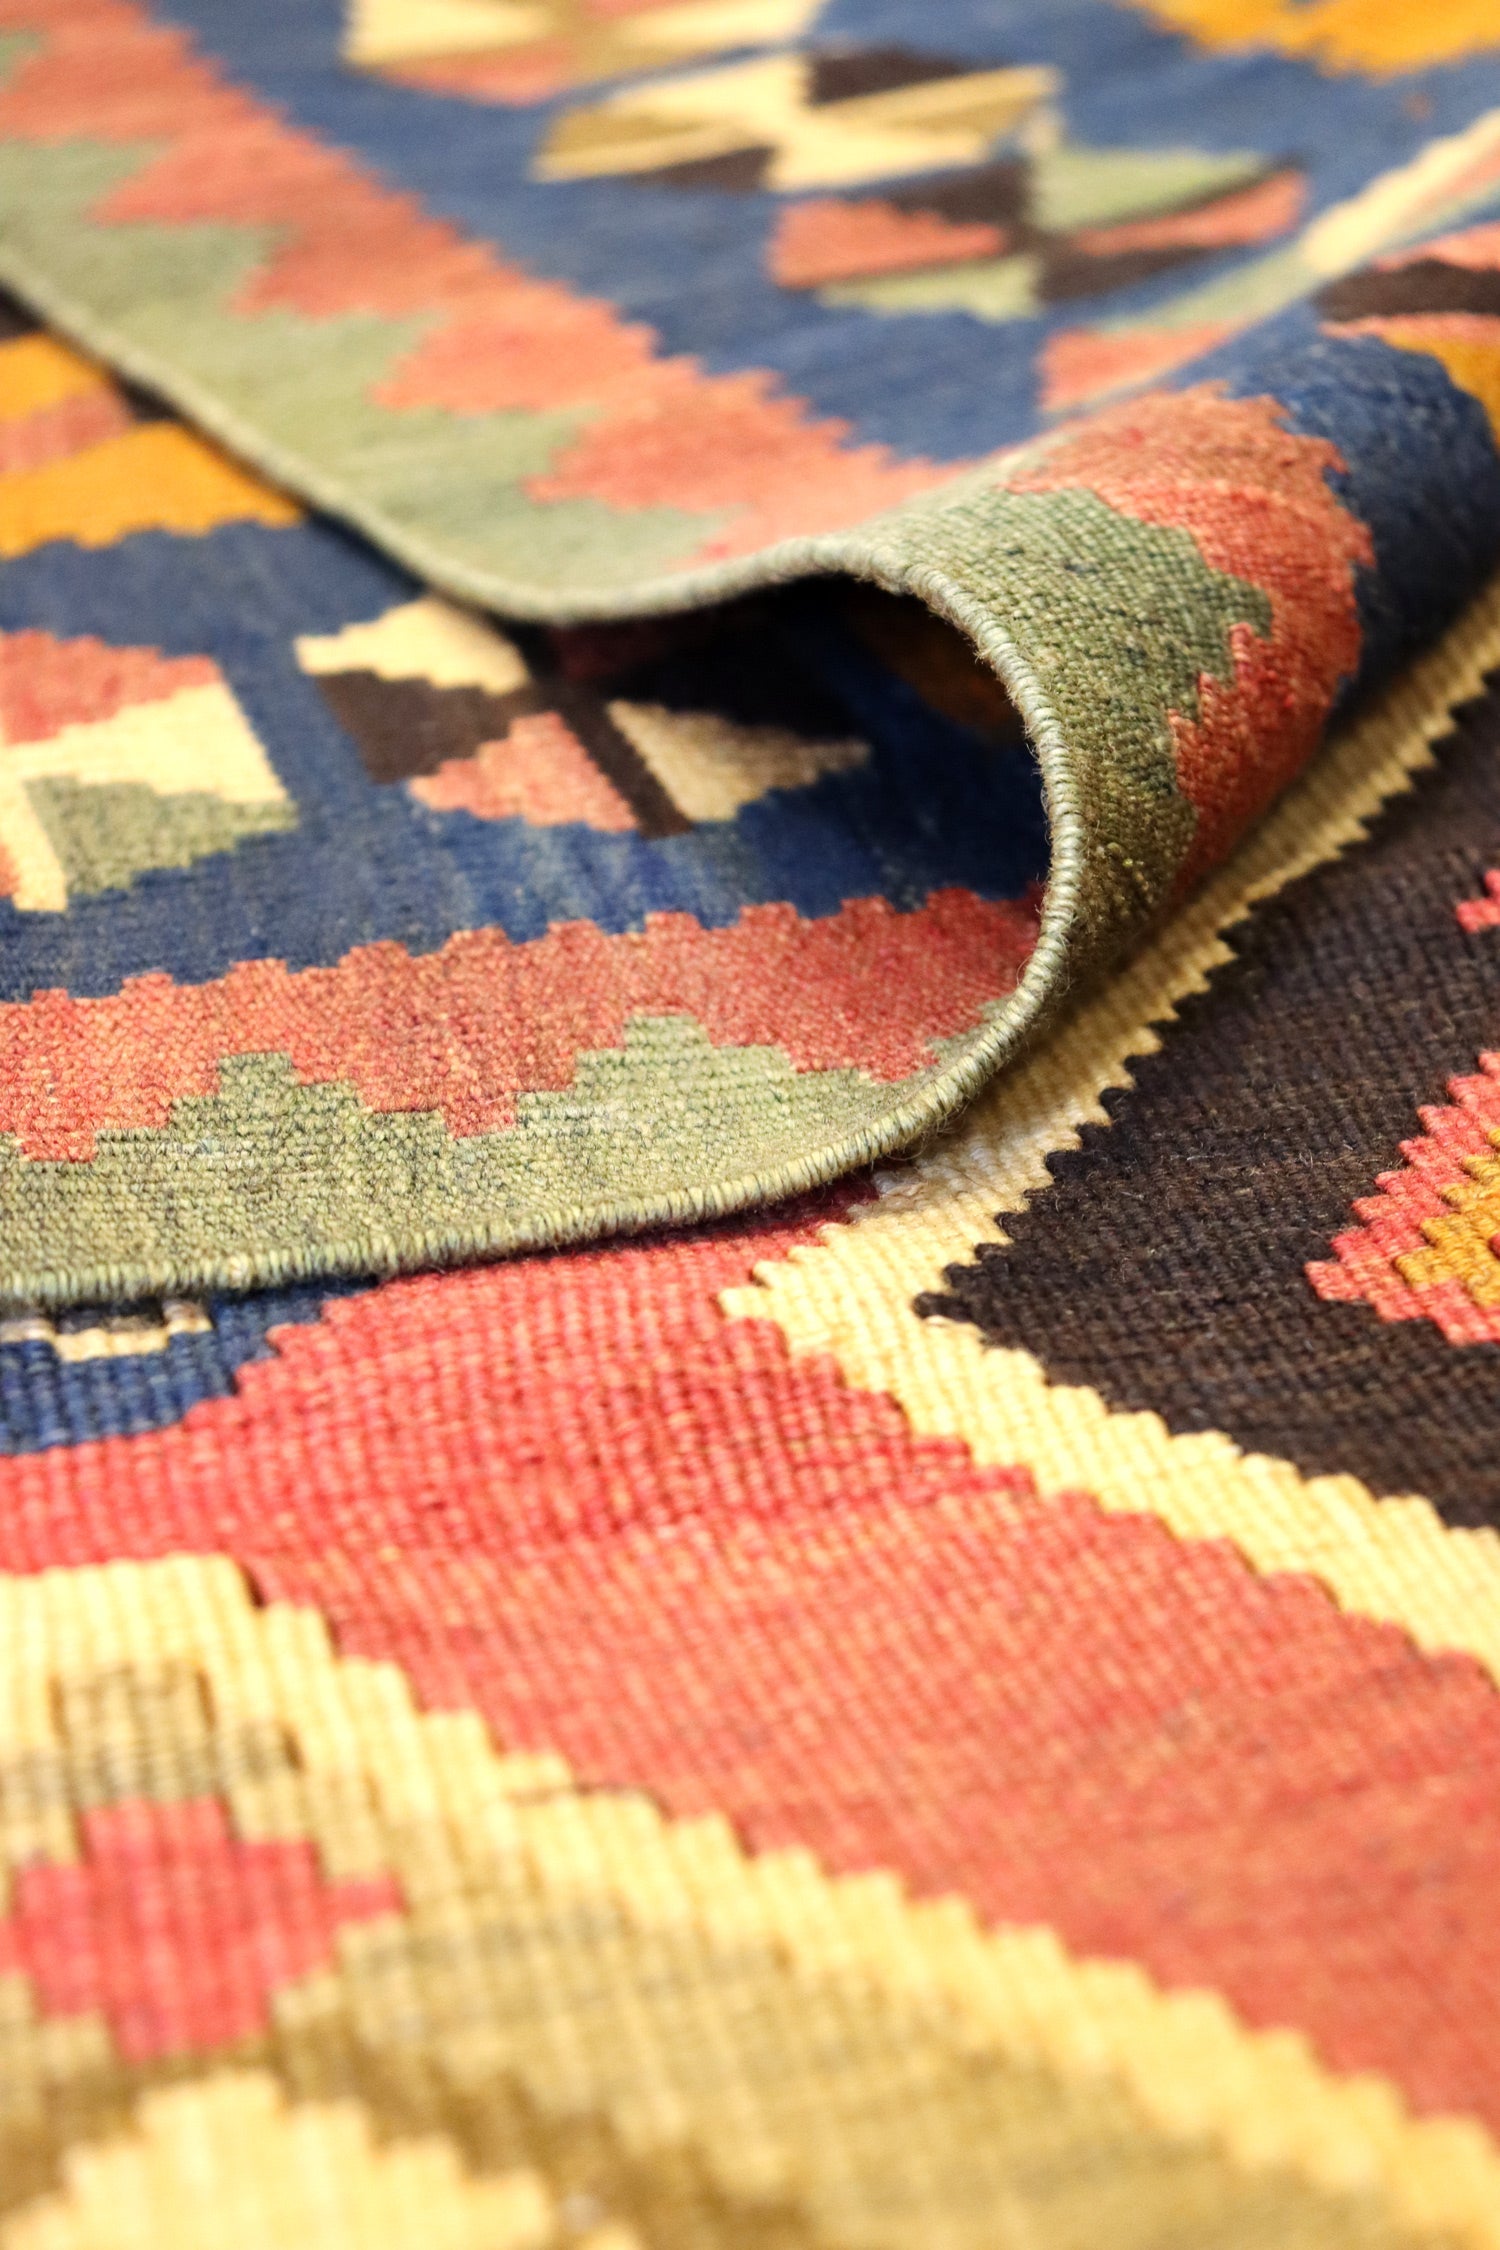 Vintage Qashqai Kilim Handwoven Tribal Rug, J65246